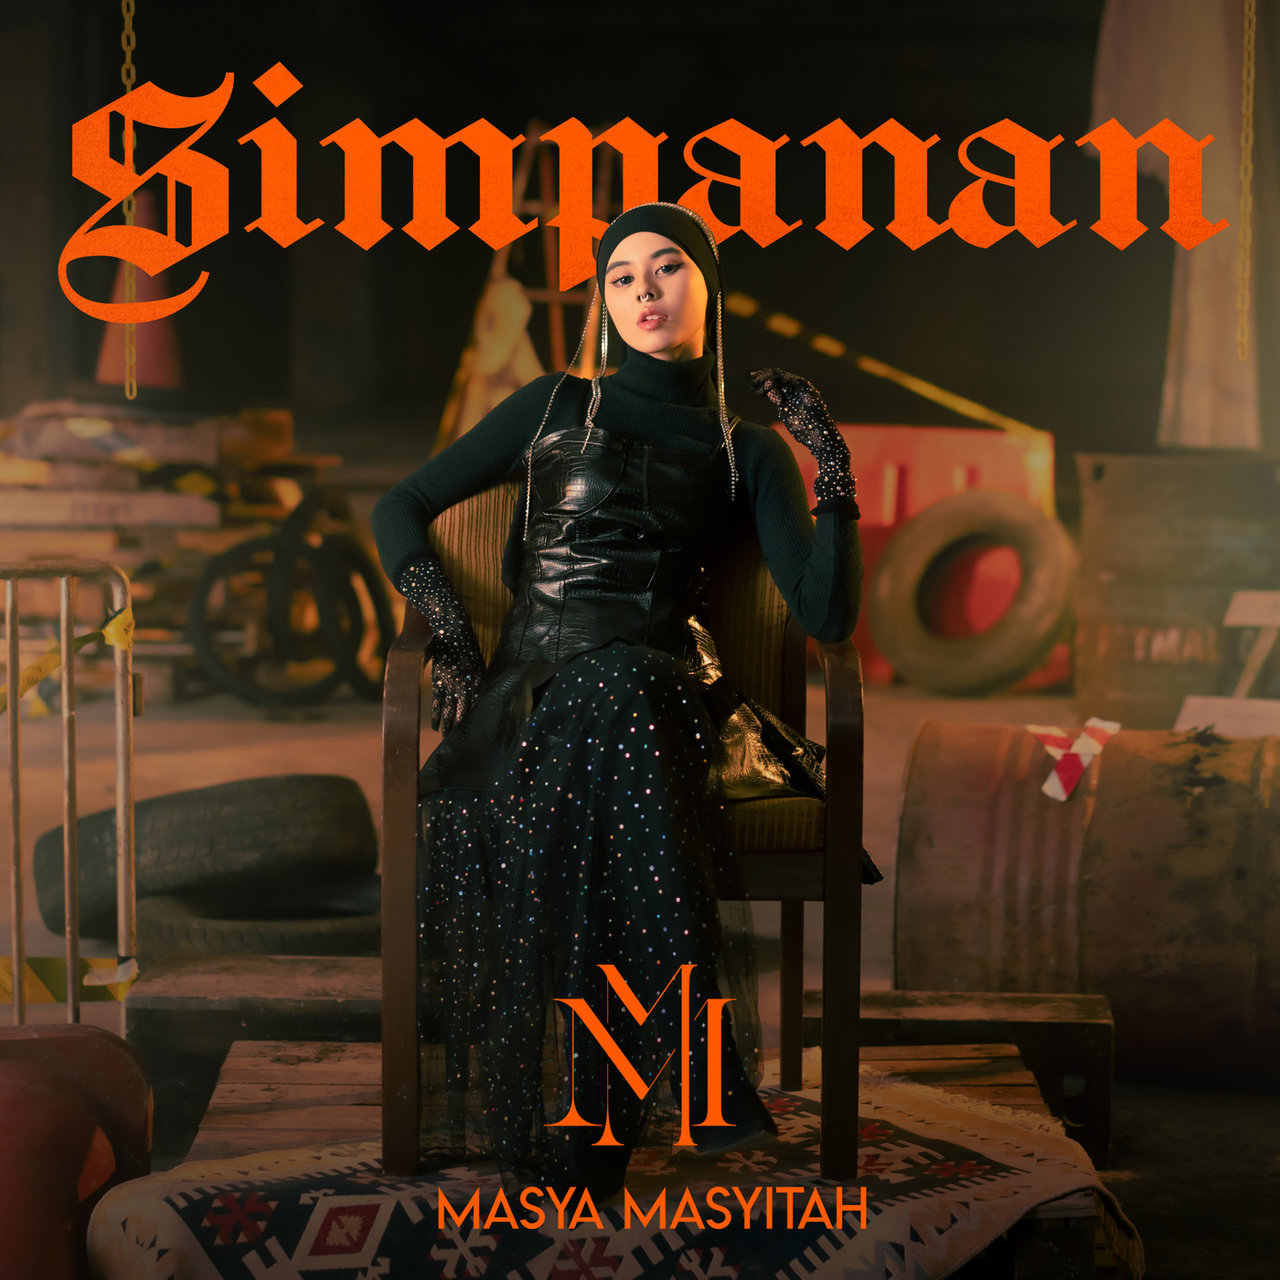 Masya Masyitah — Simpanan cover artwork